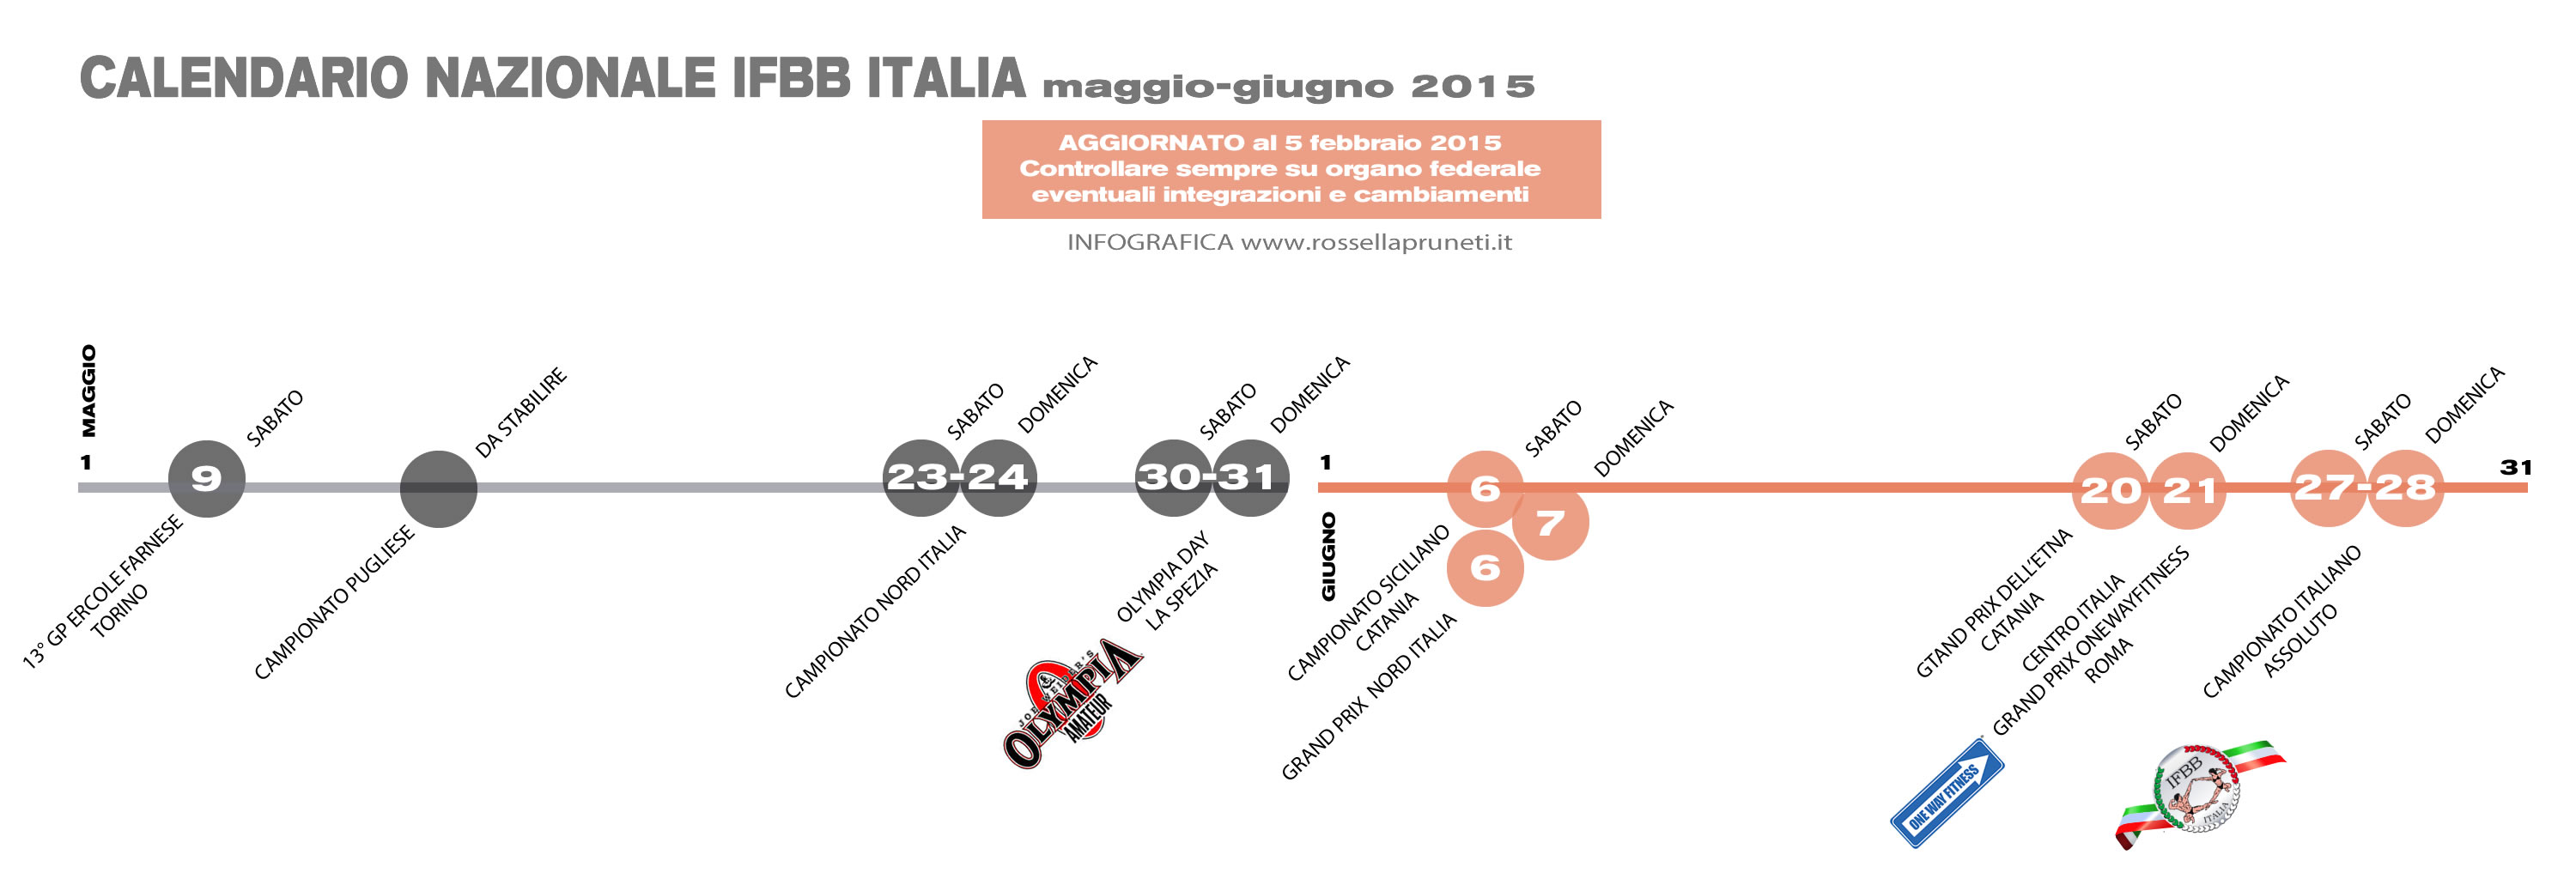 Calendario IFBB Italia 2015